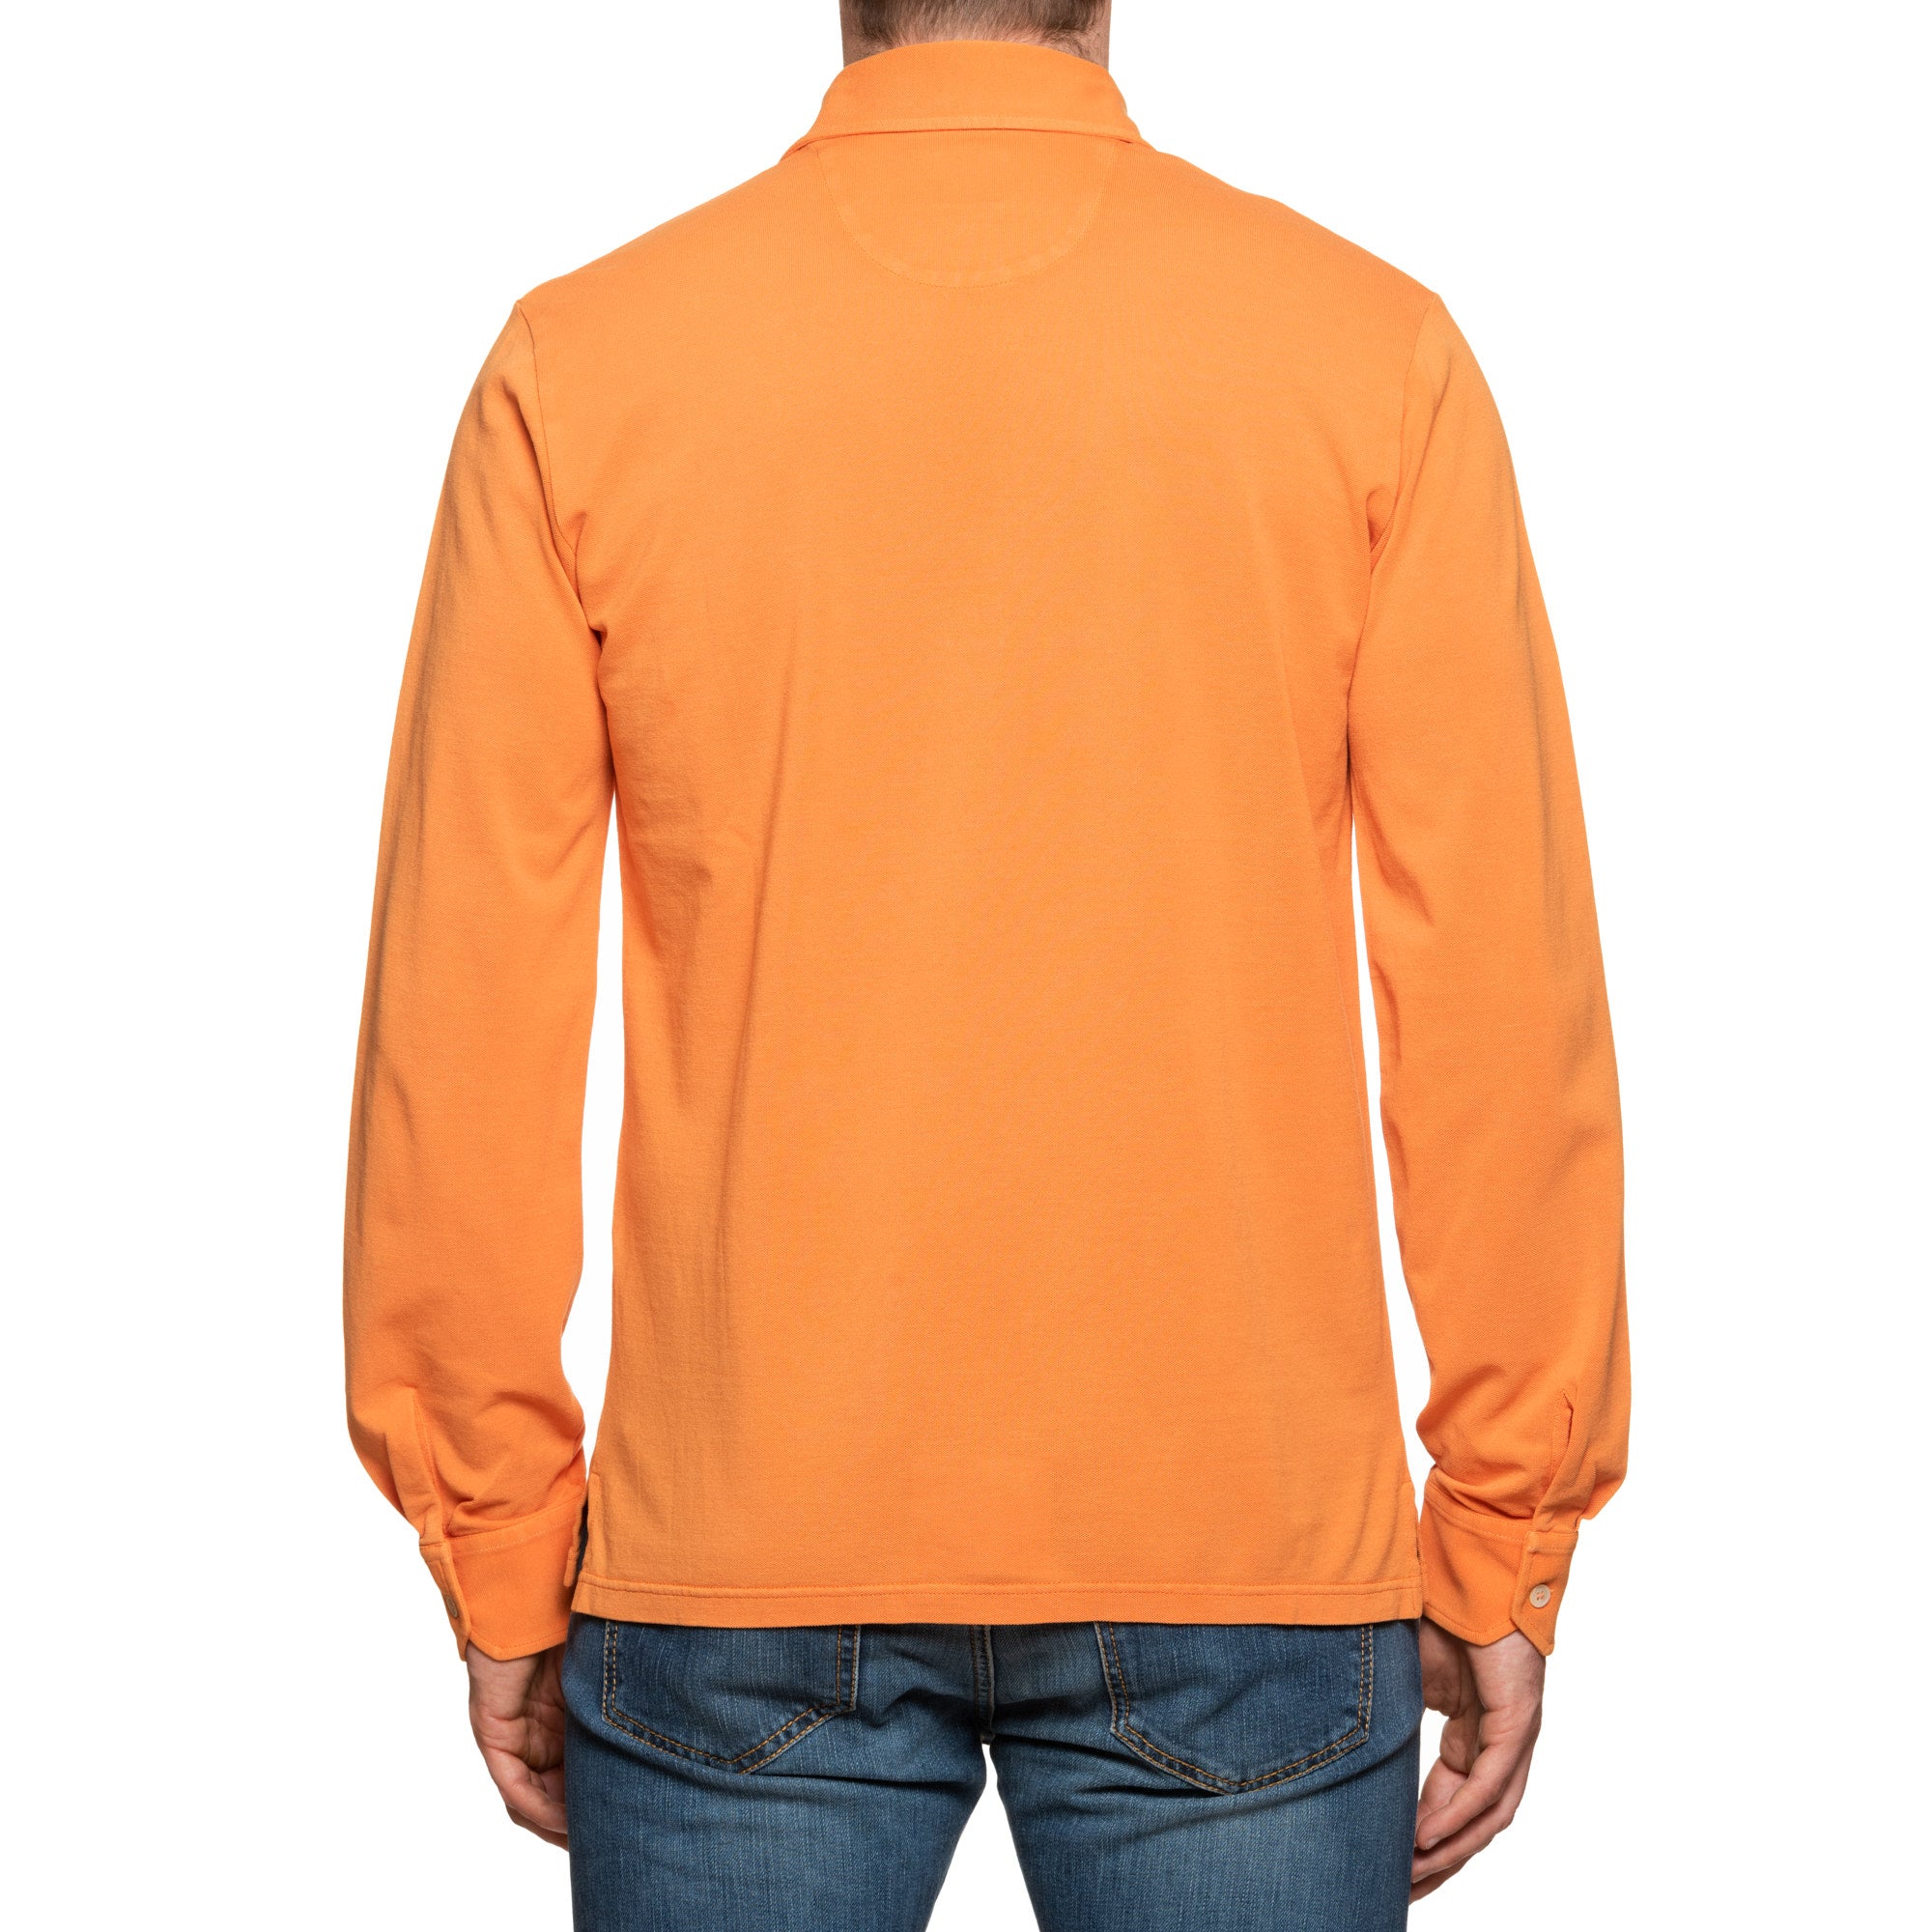 FEDELI "Ring" Orange Cotton Pique Long Sleeve Polo Shirt EU 50 NEW US M FEDELI